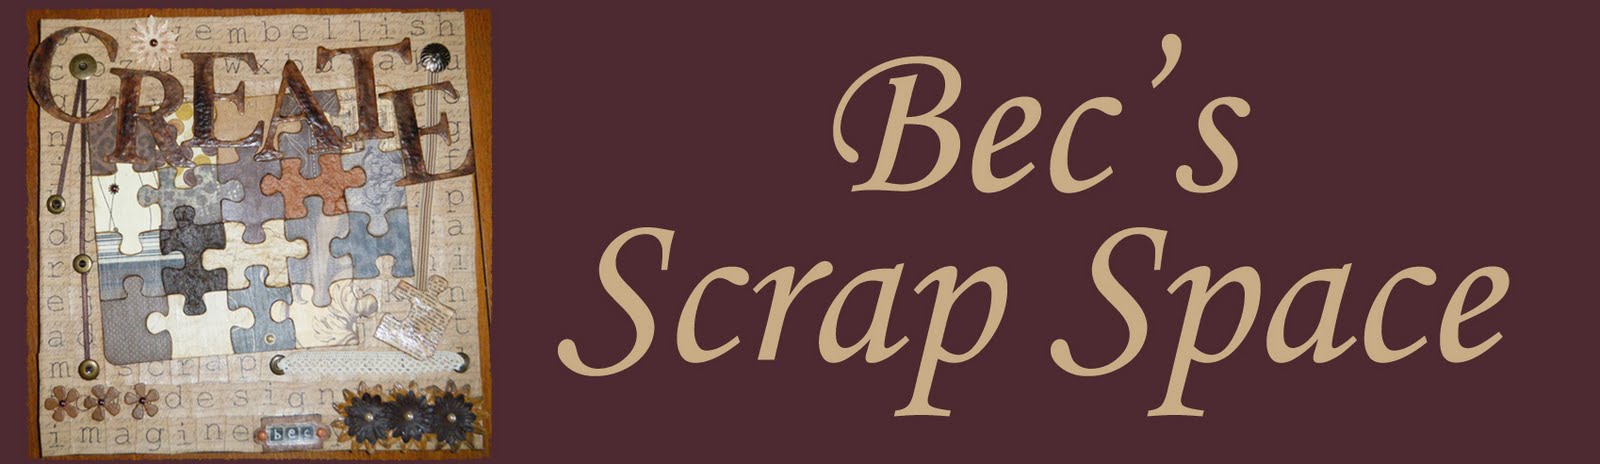 Bec's Scrap Space